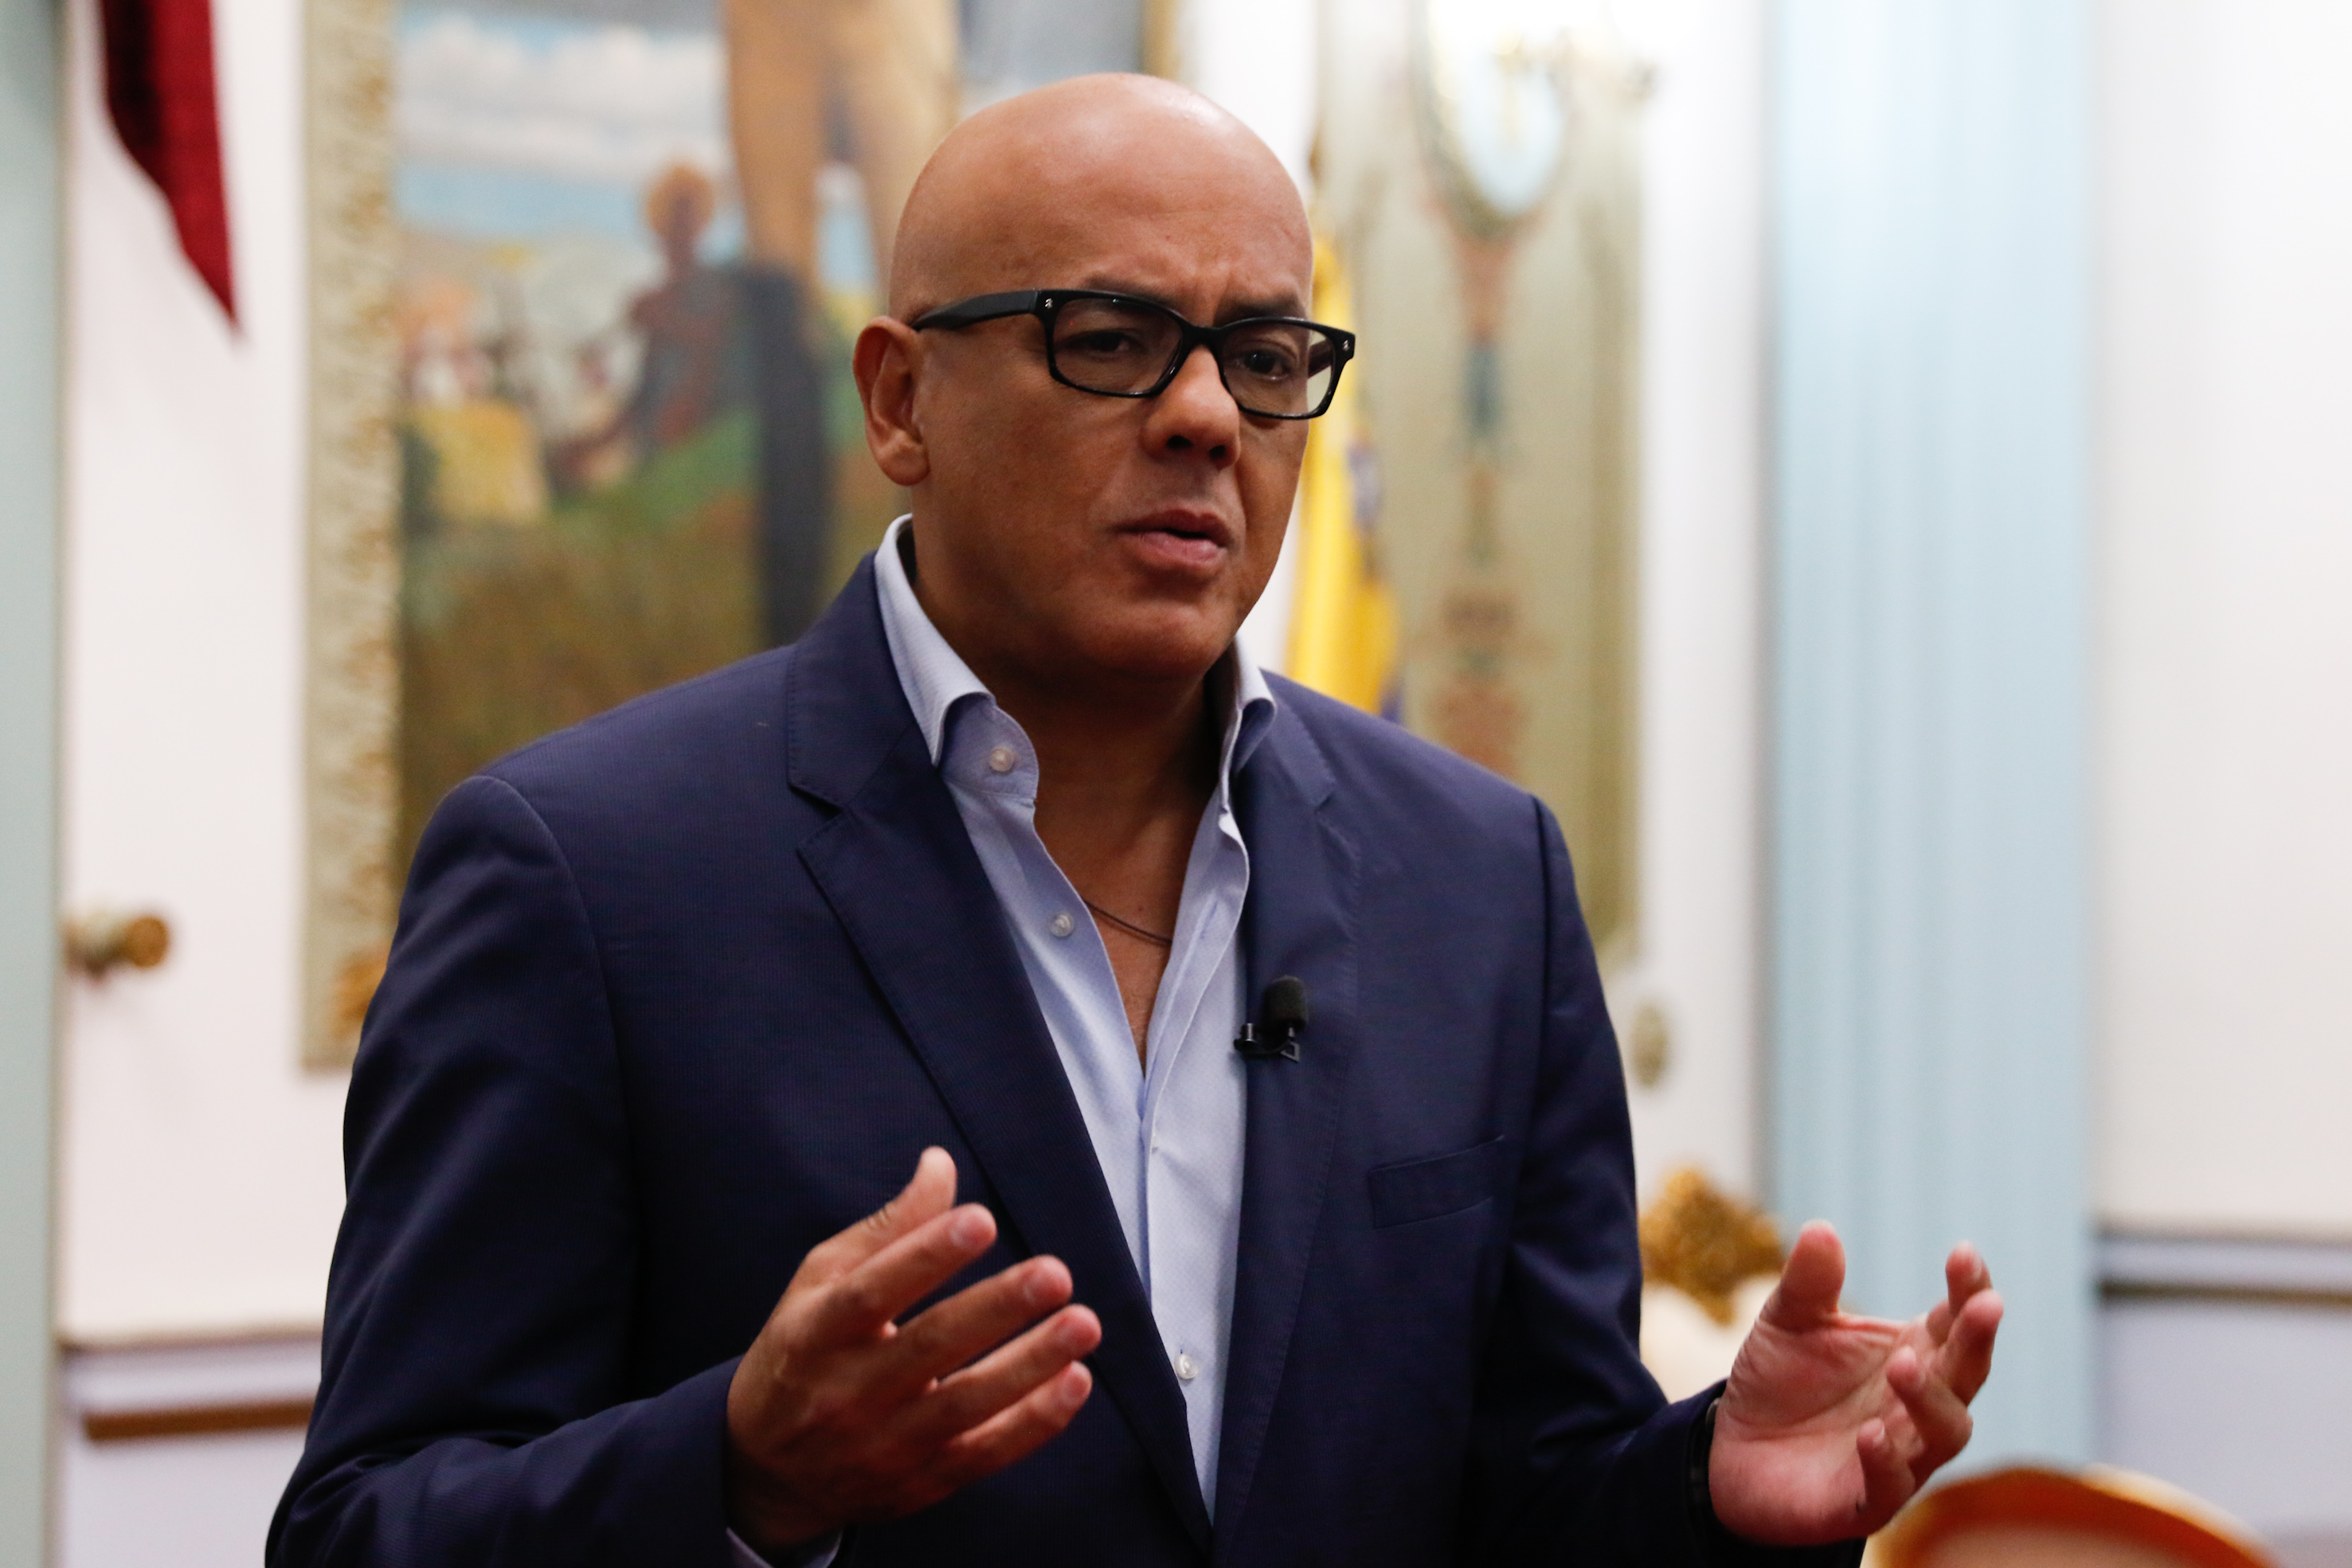 Tras el diálogo sostenido en República Dominicana, Rodríguez manifestó su confianza en alcanzar acuerdos en materia económica y social con la derecha venezolana.